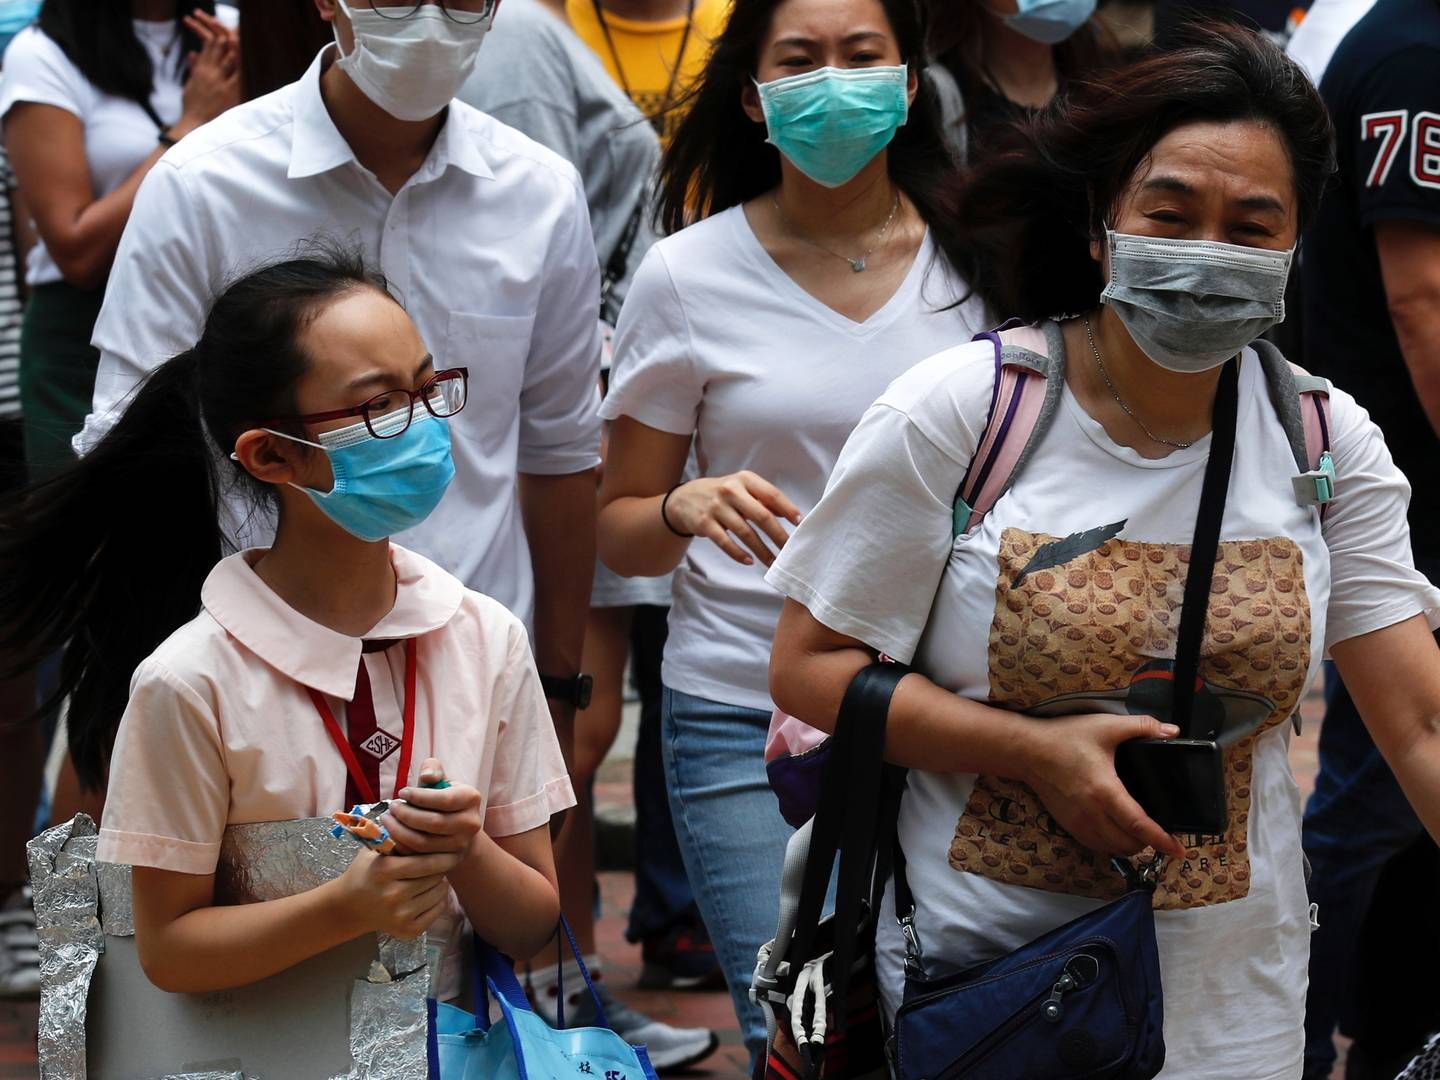 Indbyggere i Hongkong bærer maske for at forhindre smittespredning. Alligevel er den globale bogmesse nu aflyst blot to dage før afviklingen skulle have fundet sted. | Foto: TYRONE SIU/REUTERS/Ritzau Scanpix